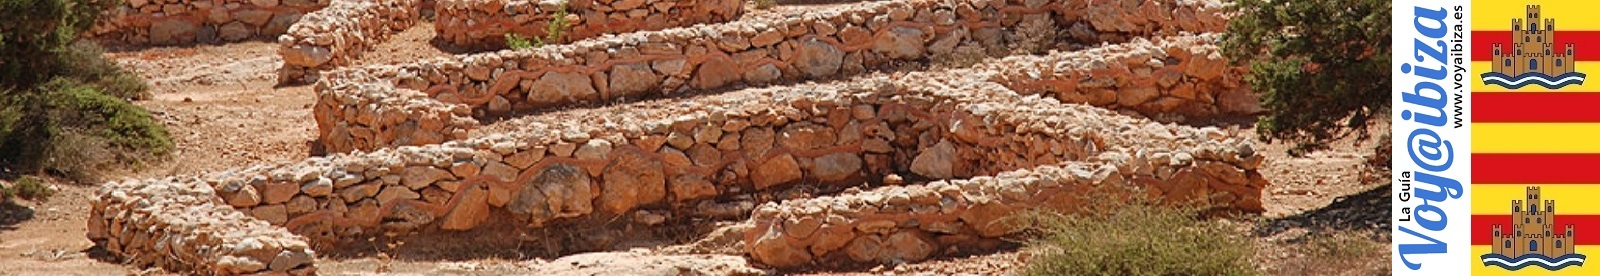 Historia de Ibiza: restos arqueológicos